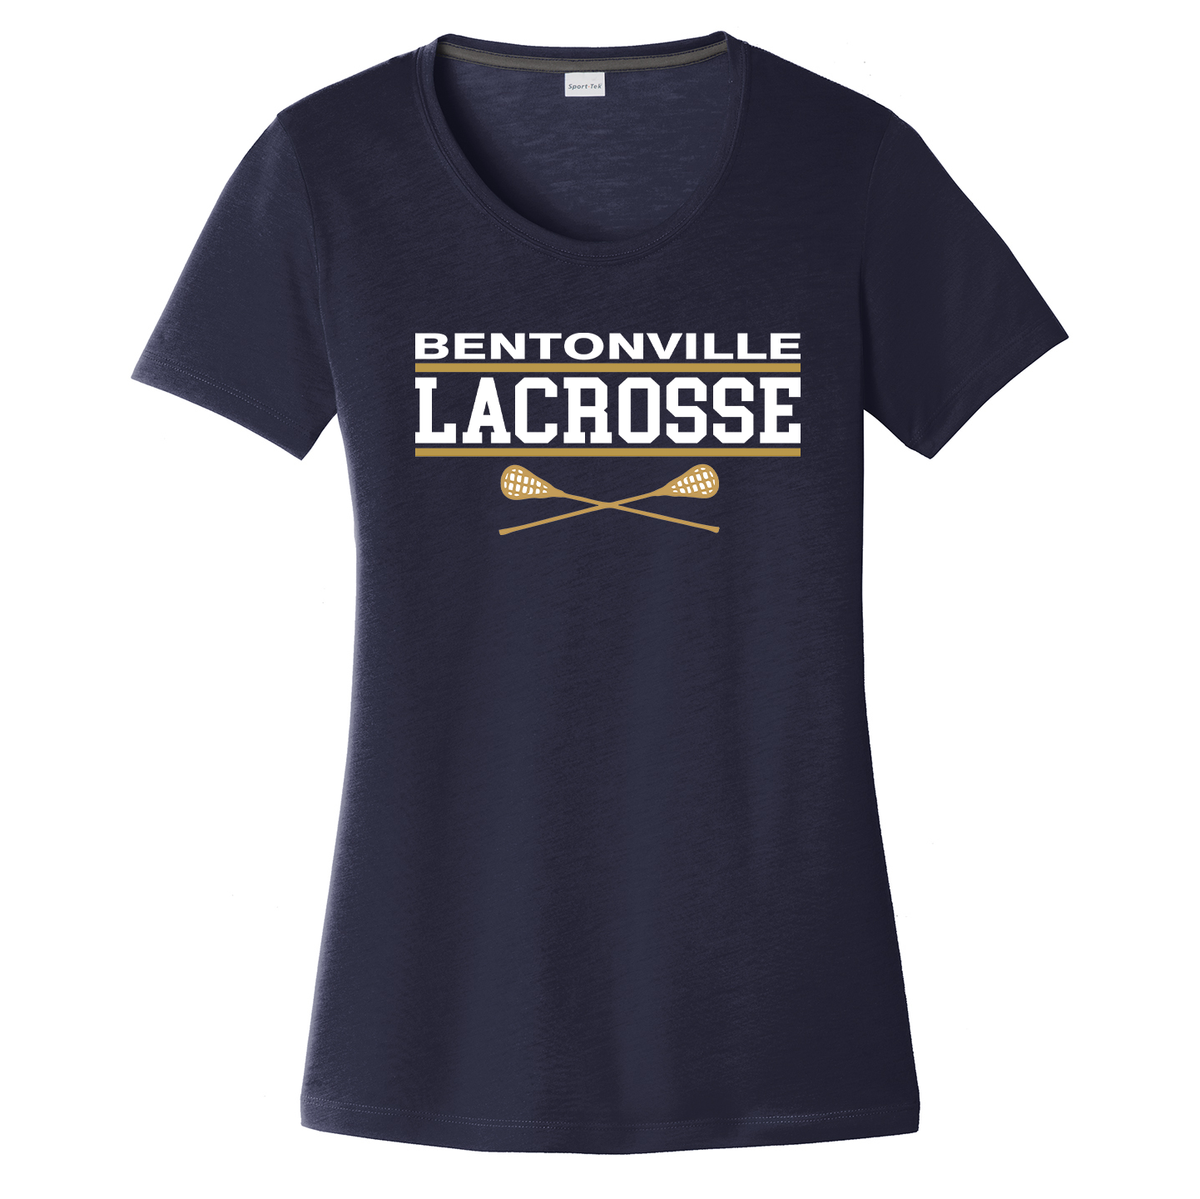 Bentonville Lacrosse Women's CottonTouch Performance T-Shirt